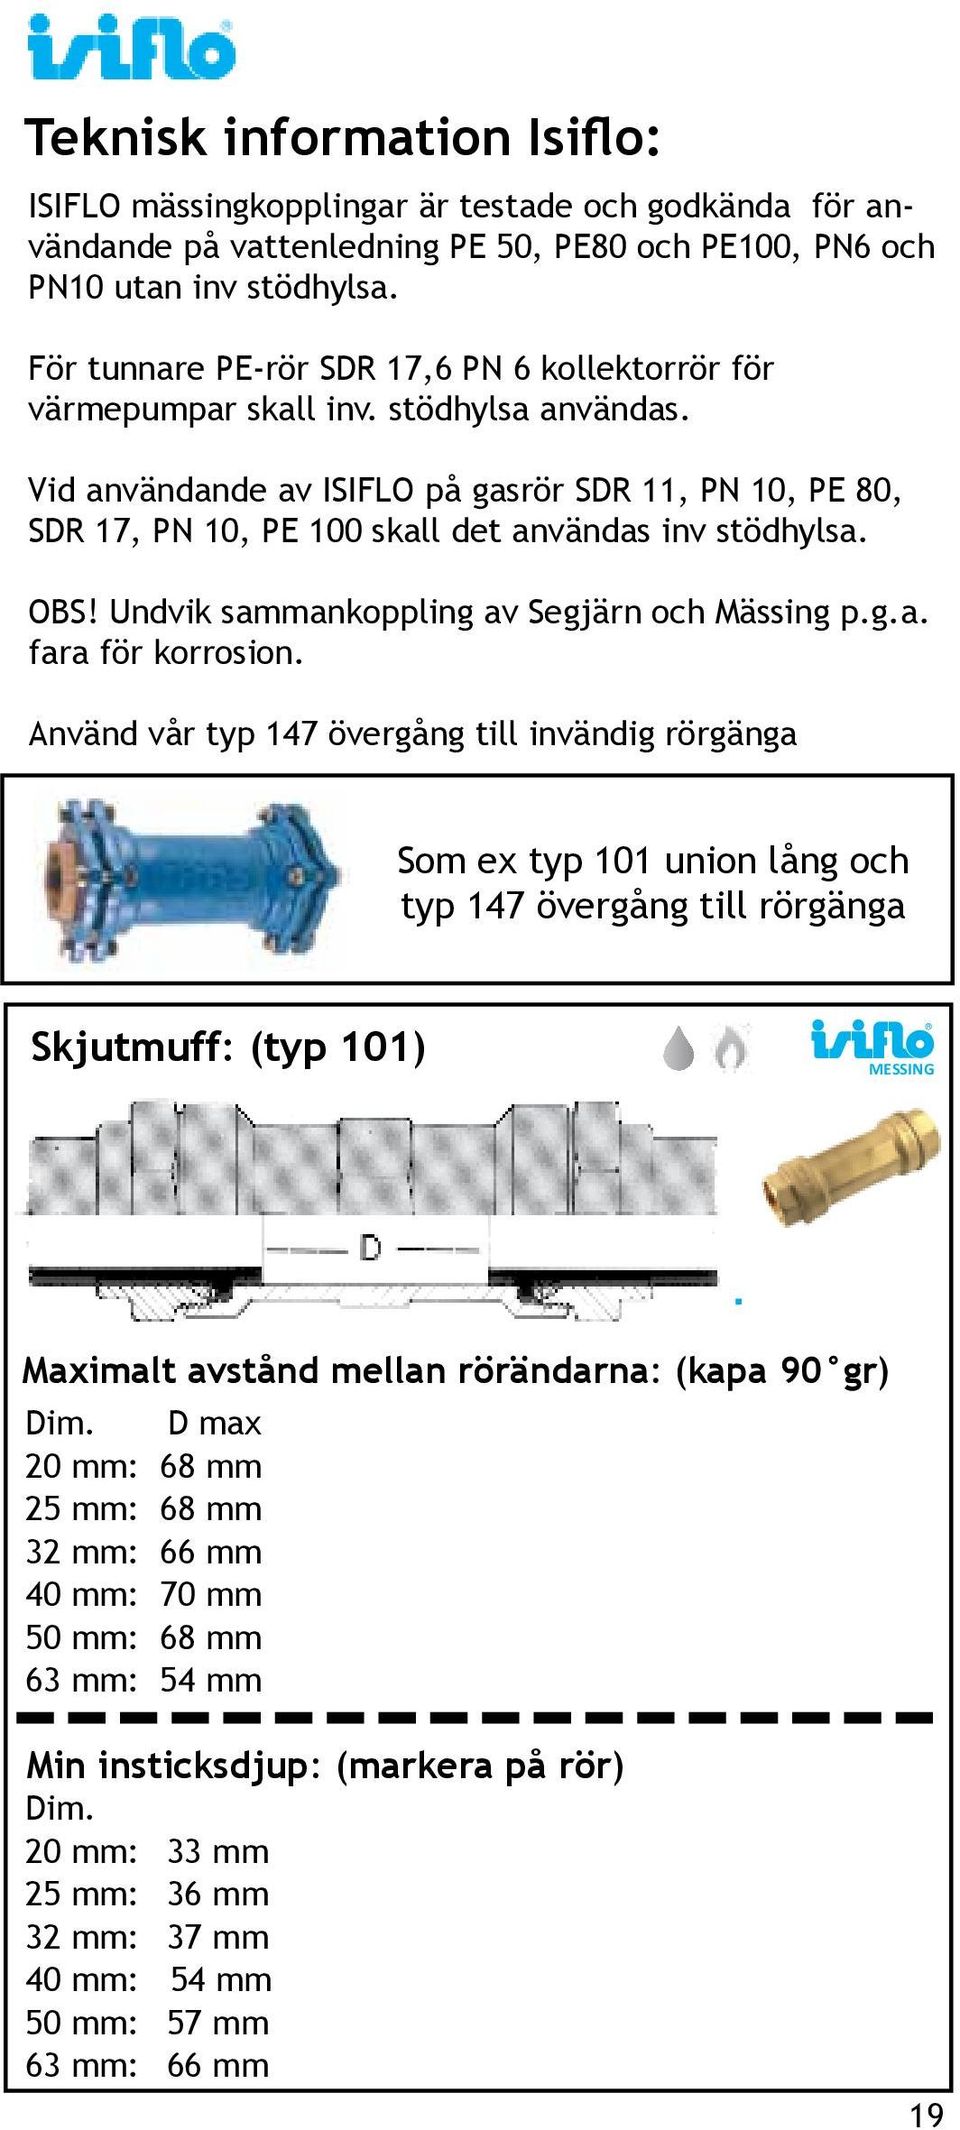 Vid användande av ISIFLO på gasrör SDR 11, PN 10, PE 80, SDR 17, PN 10, PE 100 skall det användas inv stödhylsa. OBS! Undvik sammankoppling av Segjärn och Mässing p.g.a. fara för korrosion.